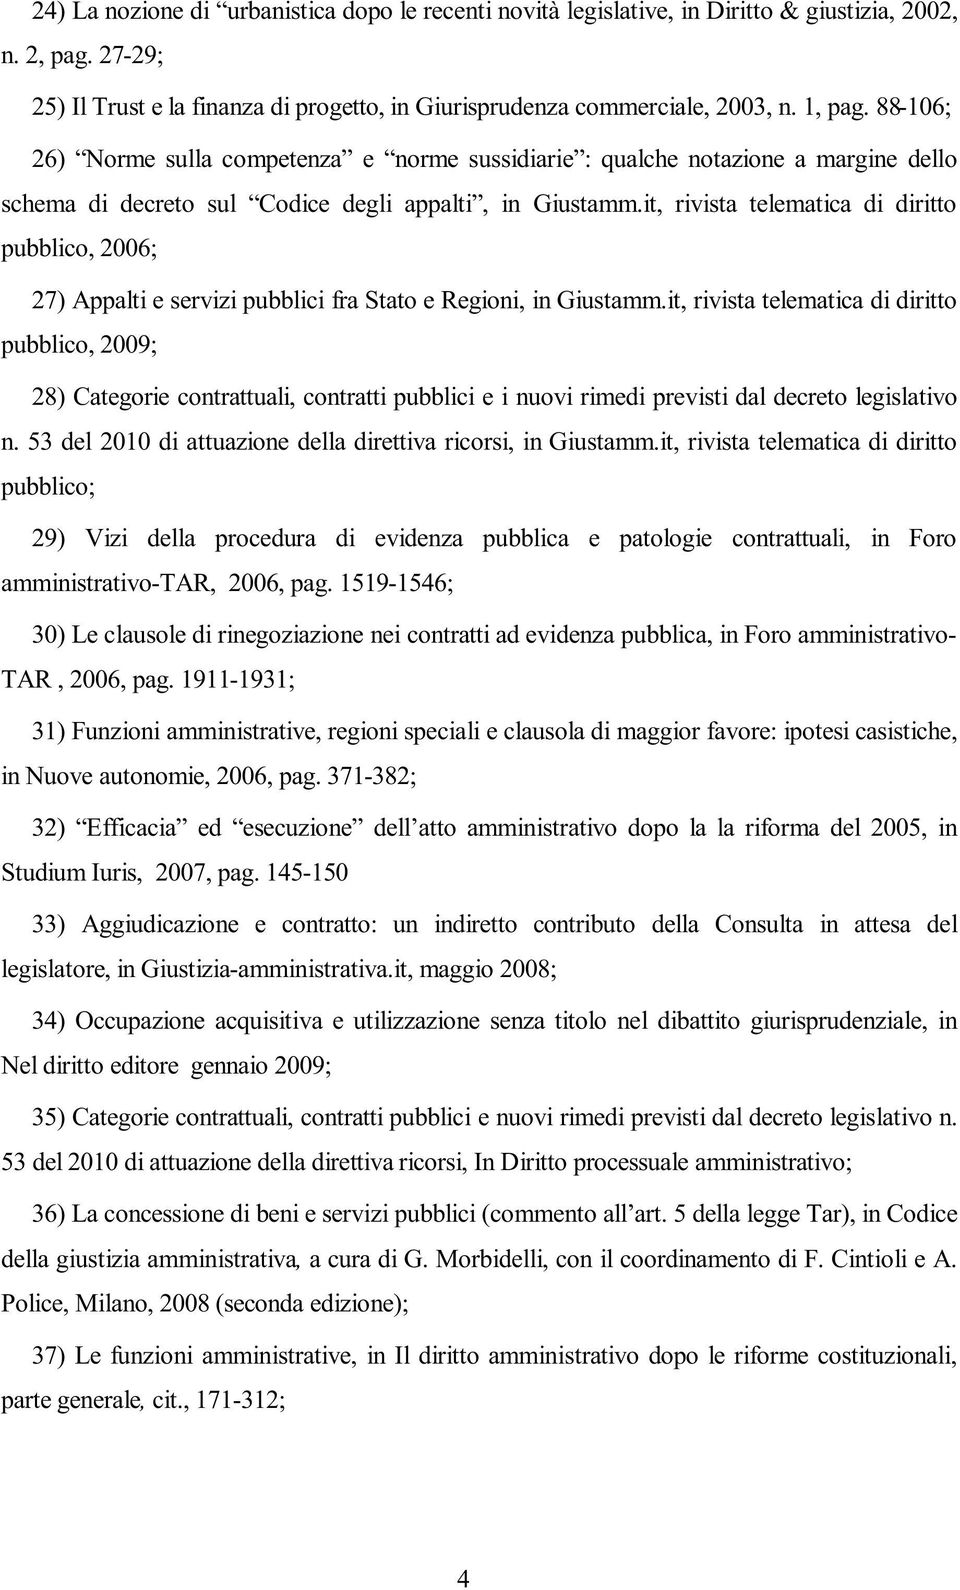 it, rivista telematica di diritto pubblico, 2006; 27) Appalti e servizi pubblici fra Stato e Regioni, in Giustamm.